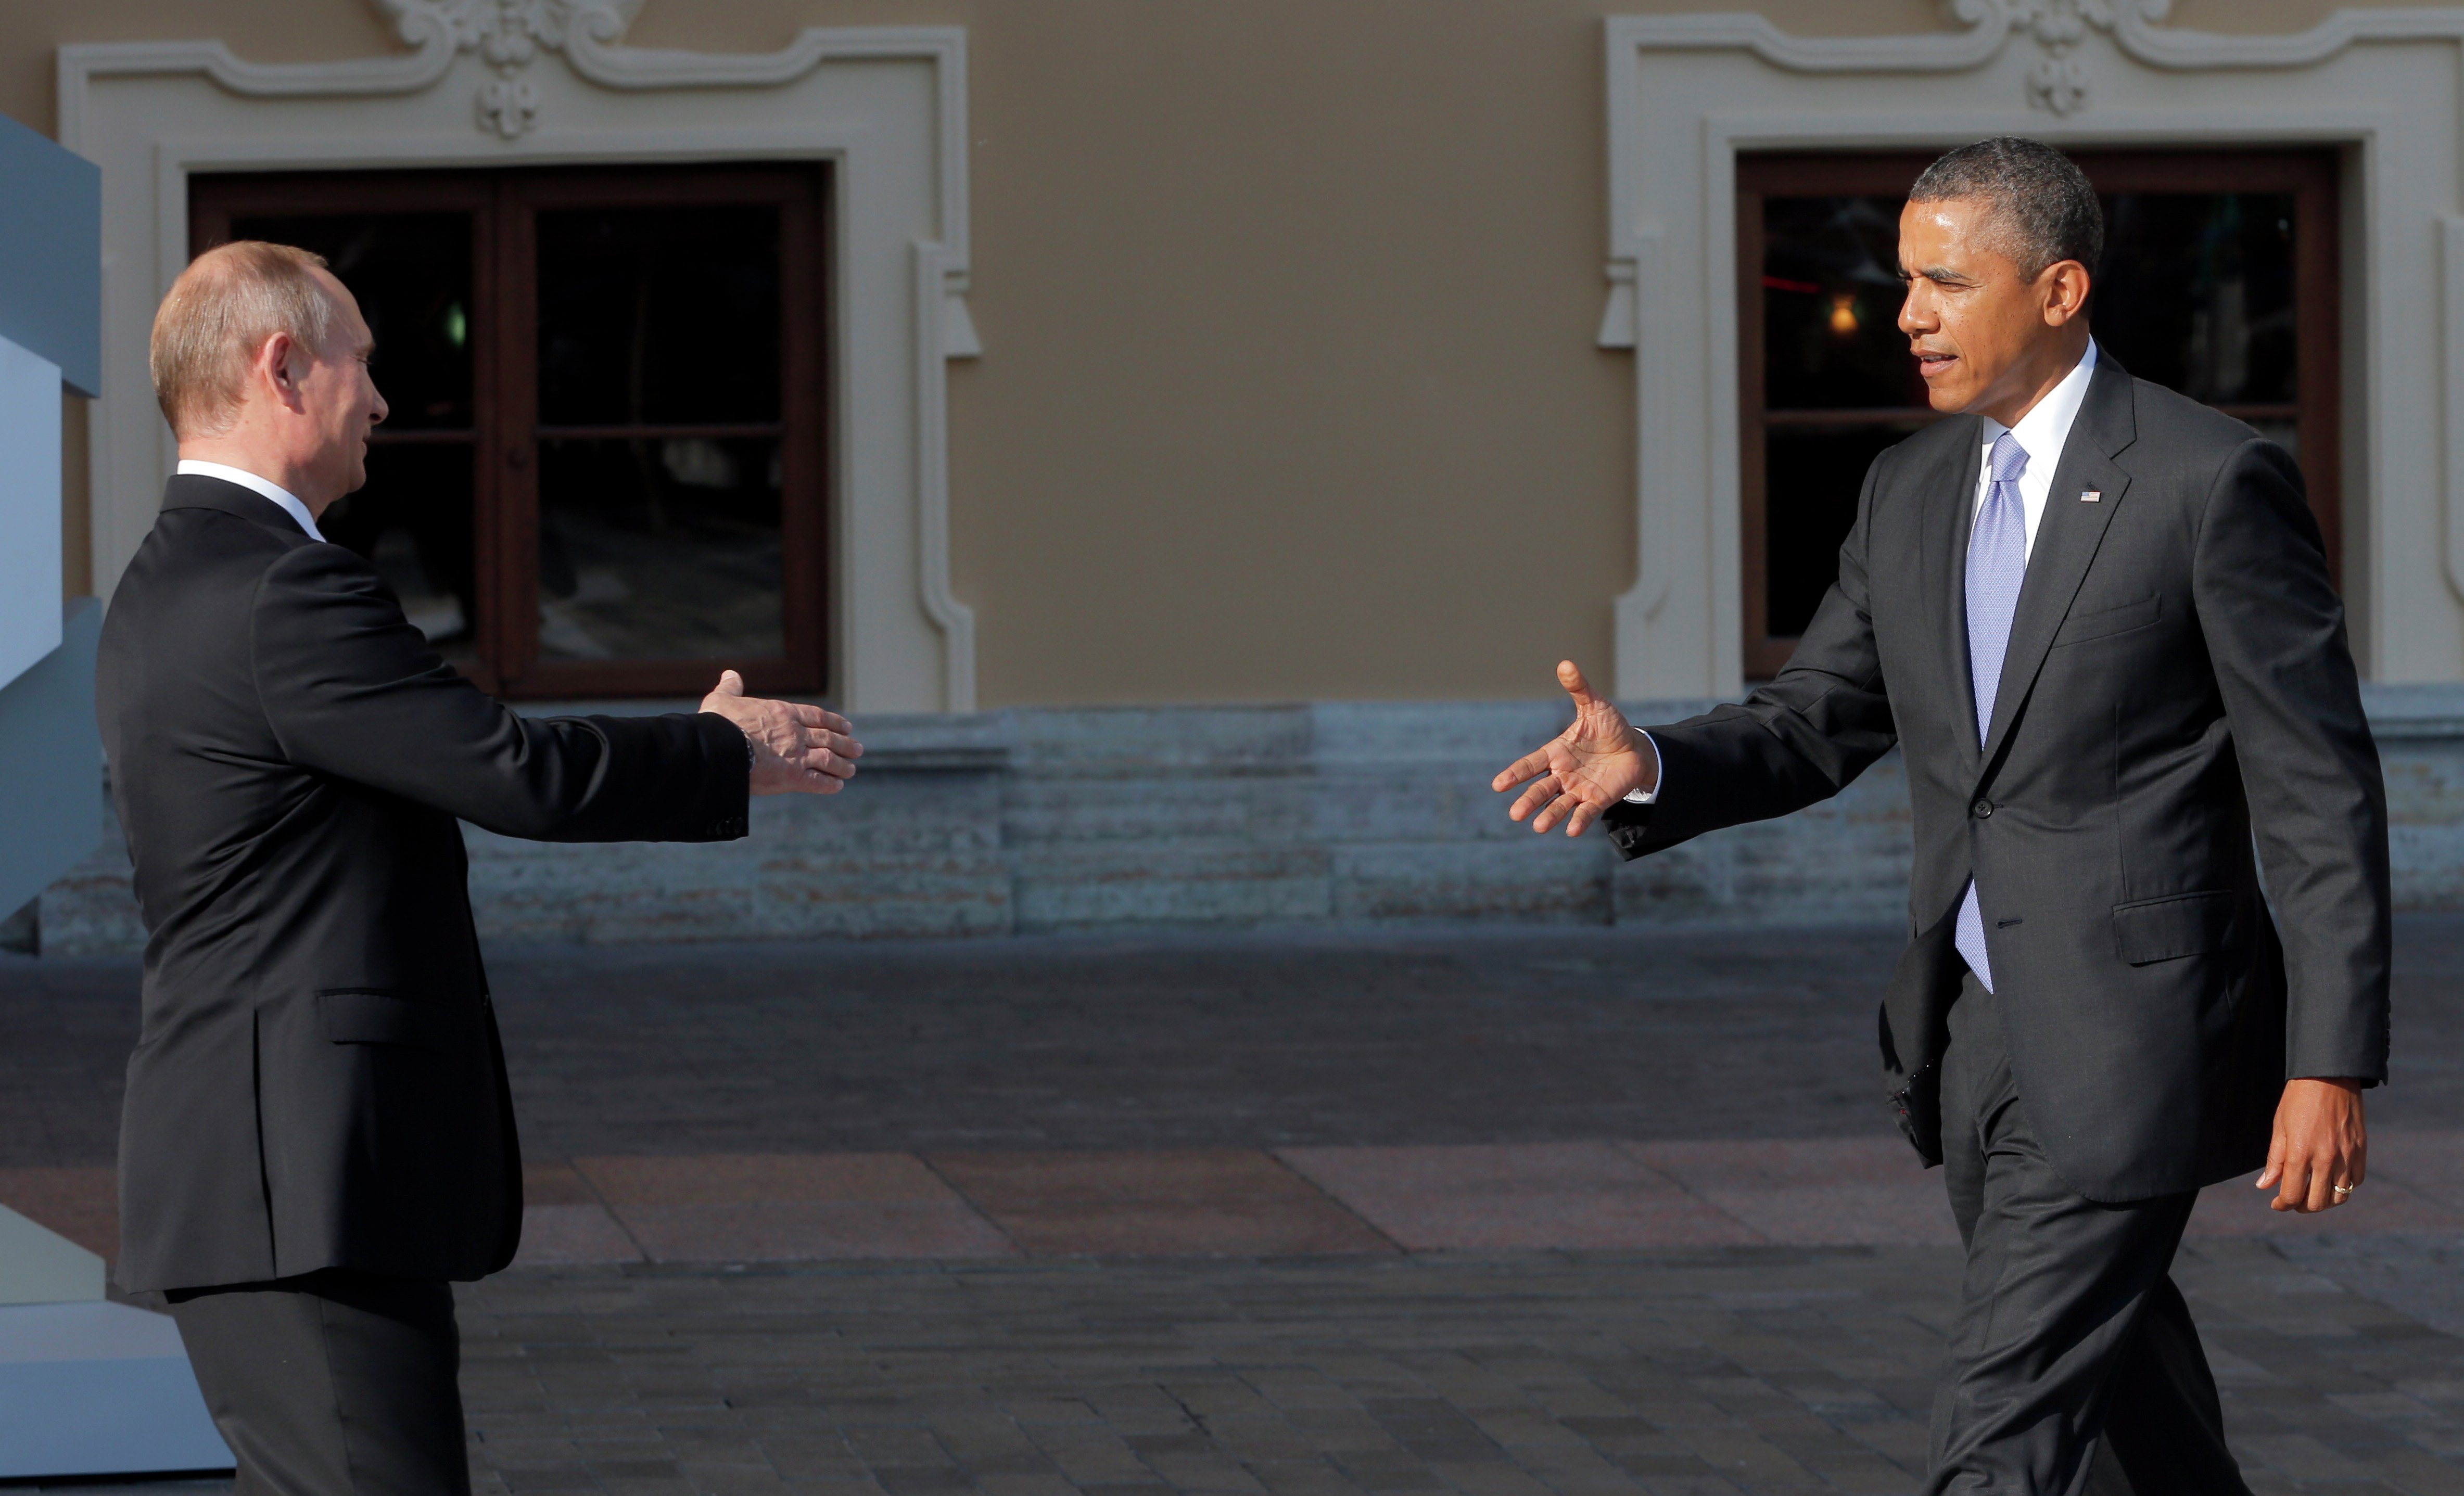  Obama suaviza tono con Putin y pide relación constructiva con Rusia